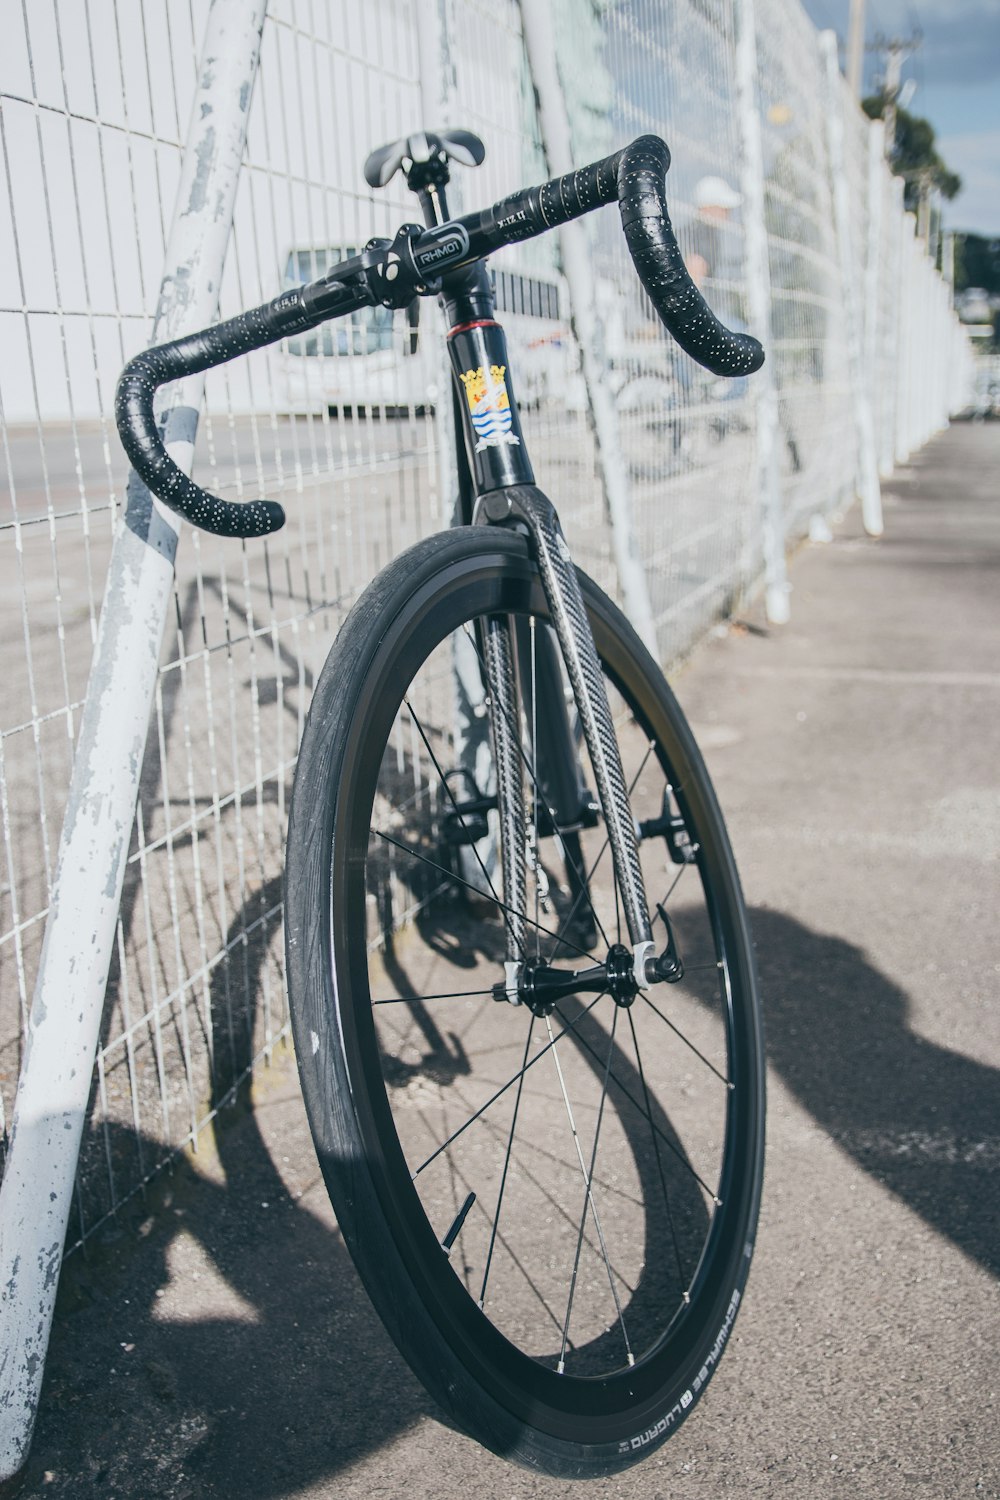 Bicicleta de carretera blanca y negra estacionada junto a la valla metálica